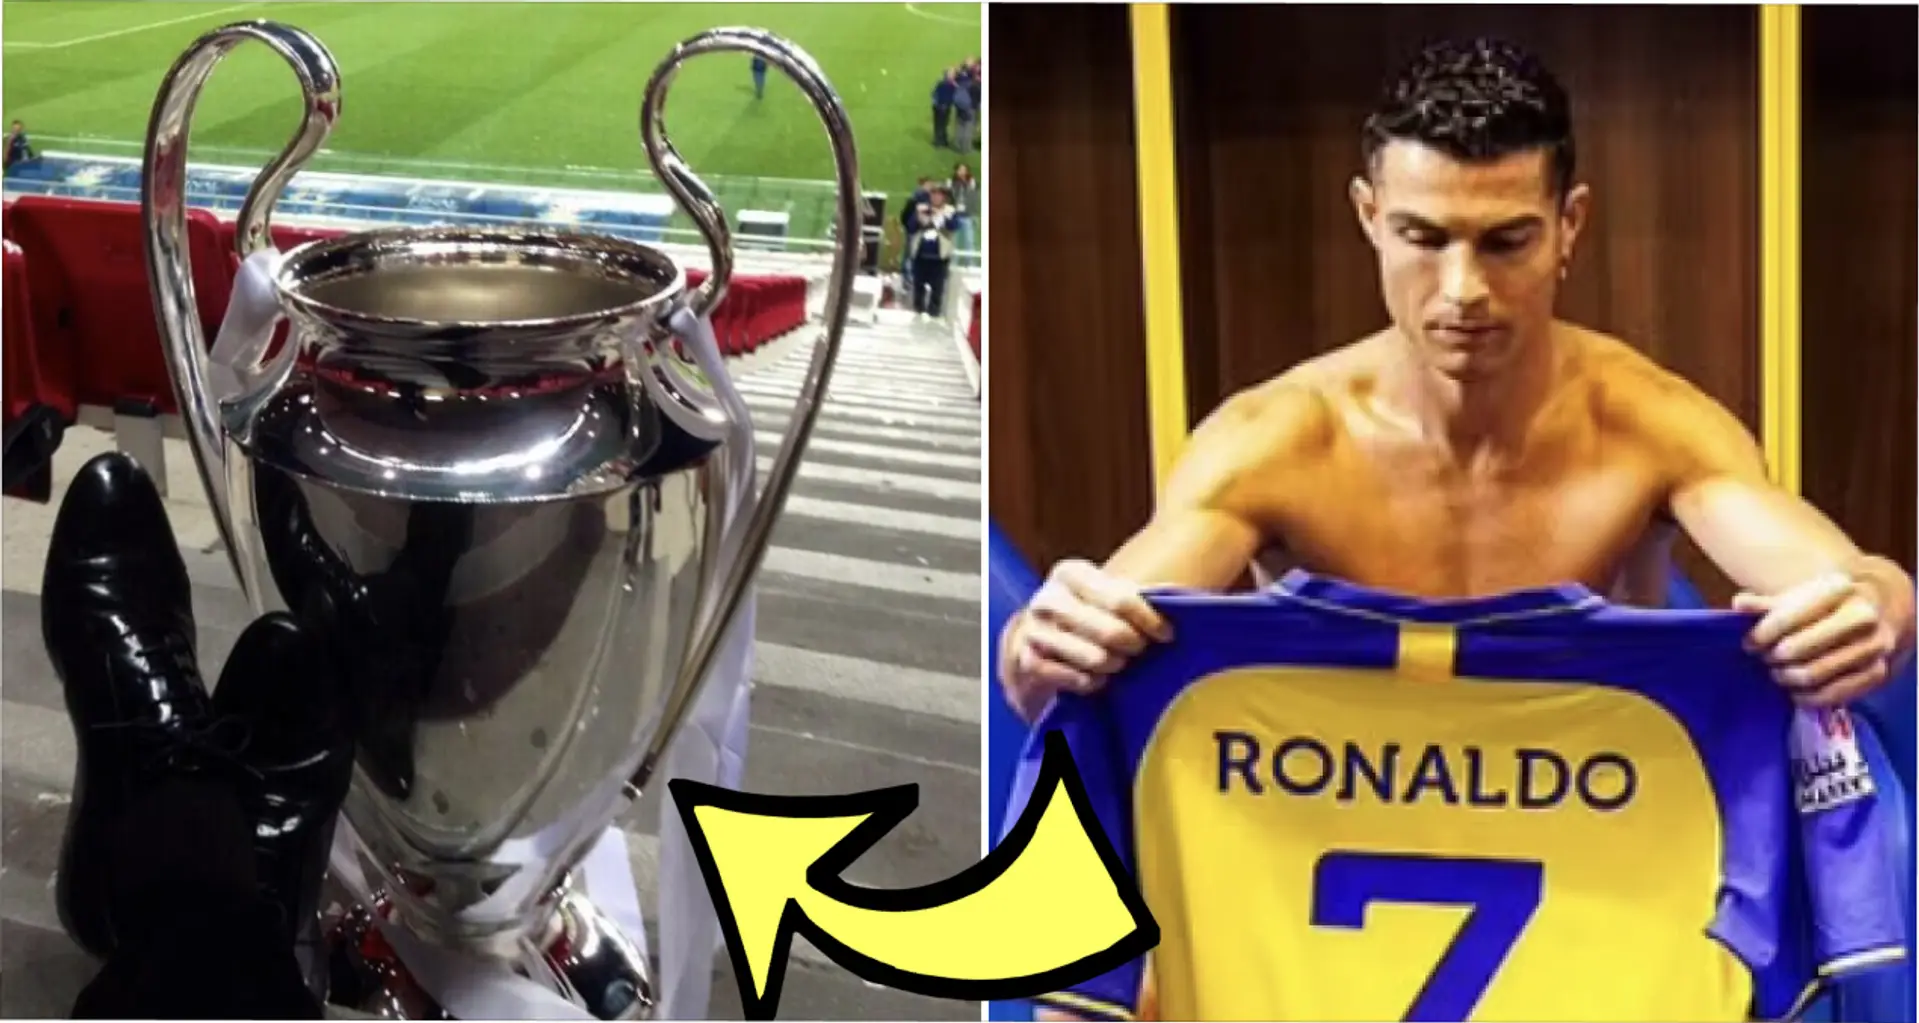 Cristiano Ronaldo wird mit einem Wechsel zu einem deutschen Verein in Verbindung gebracht - sein Trainer kennt ihn sehr gut